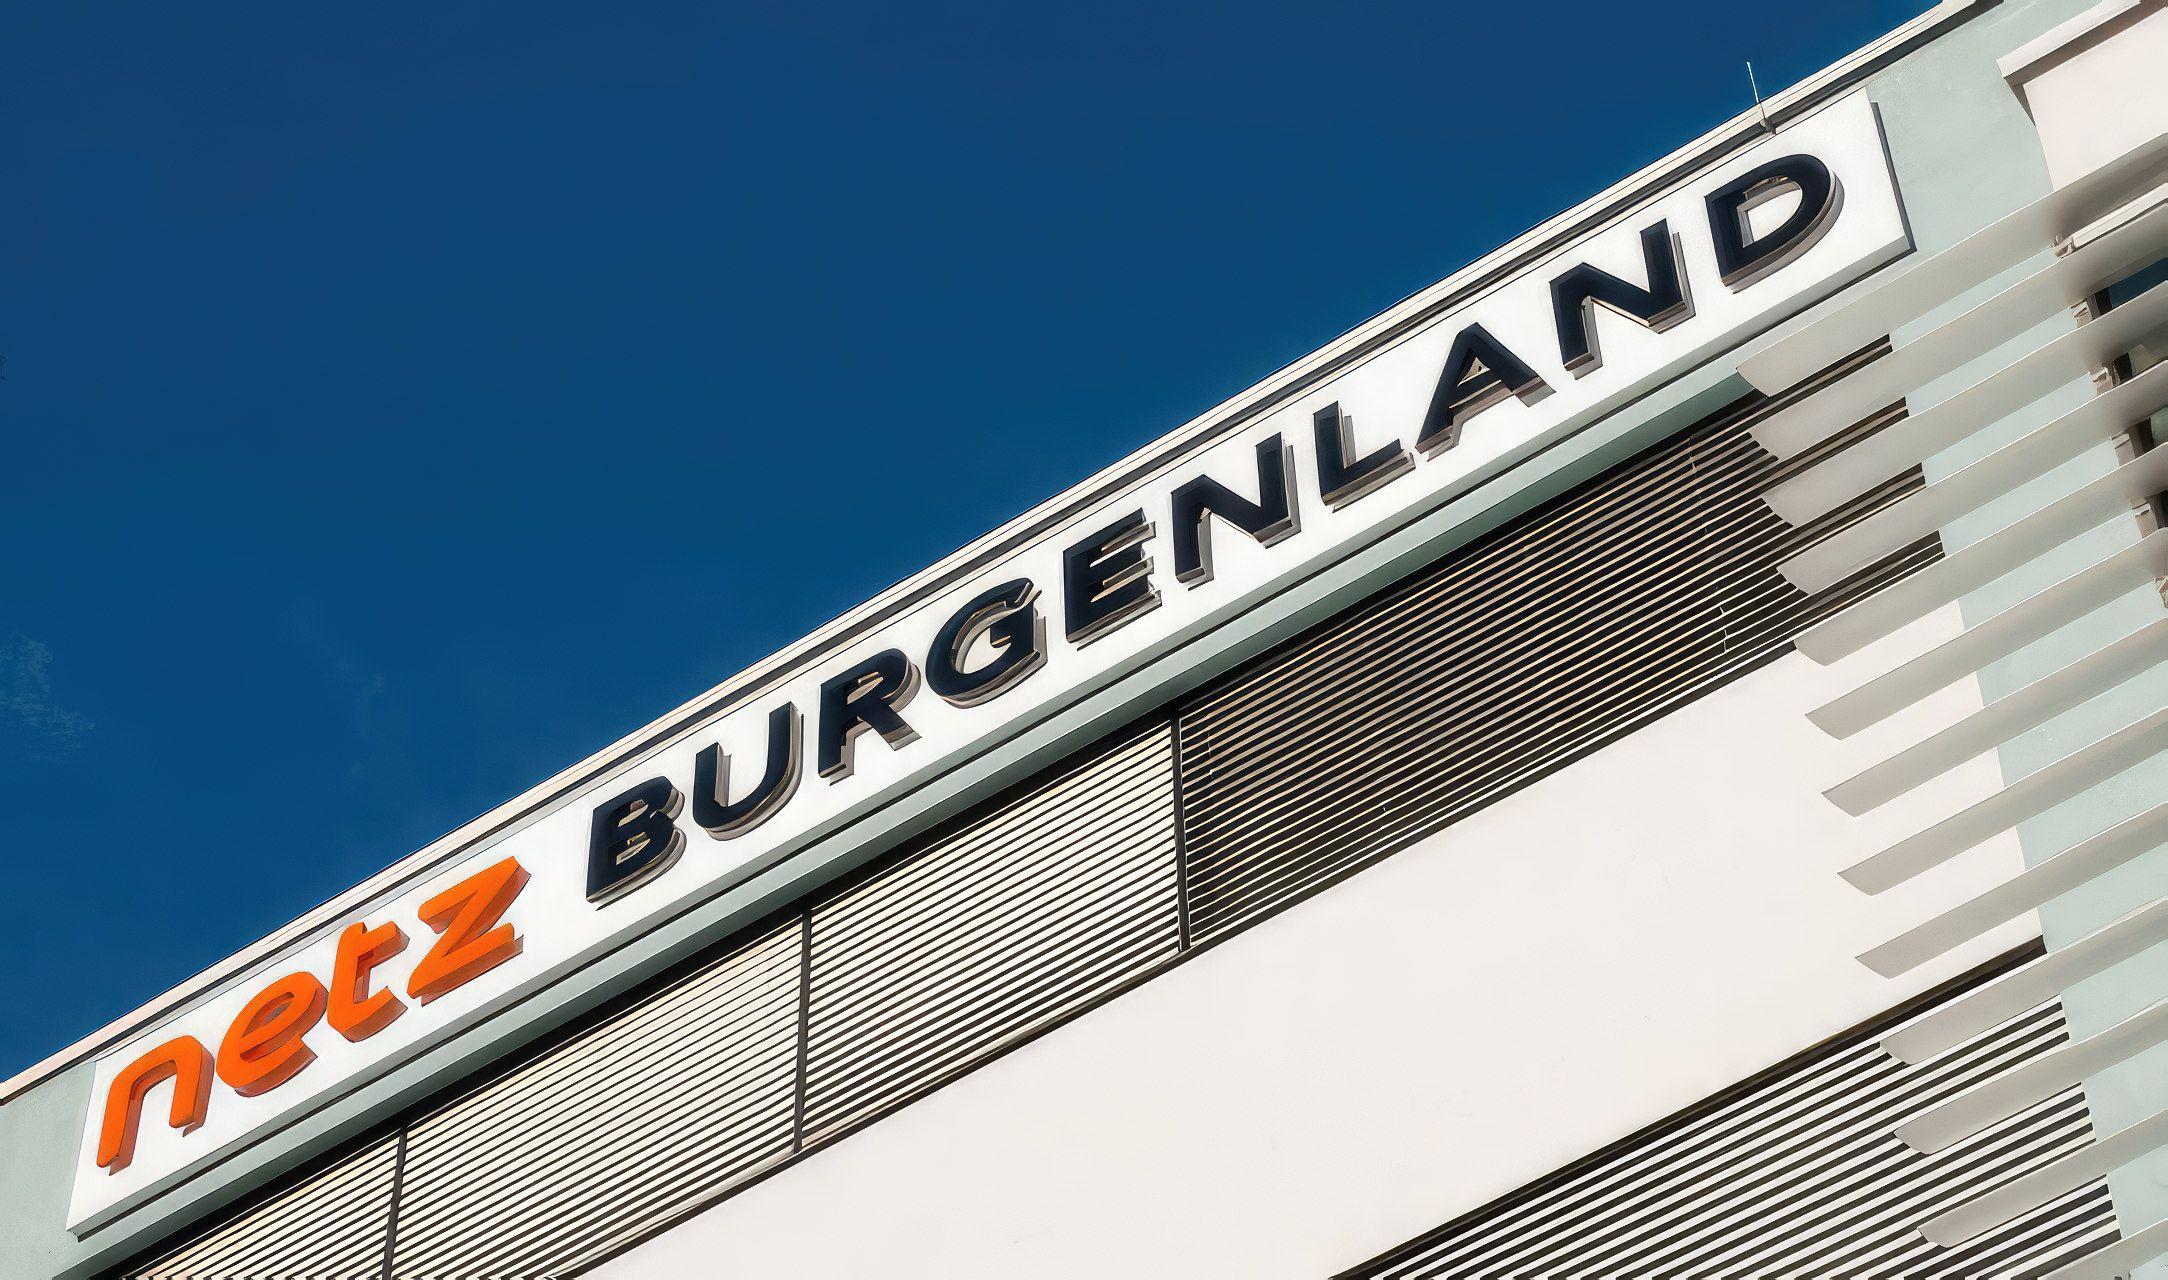 Das Netz Burgenland Logo in Großaufnahme an der Außenfassade eines Gebäudes.